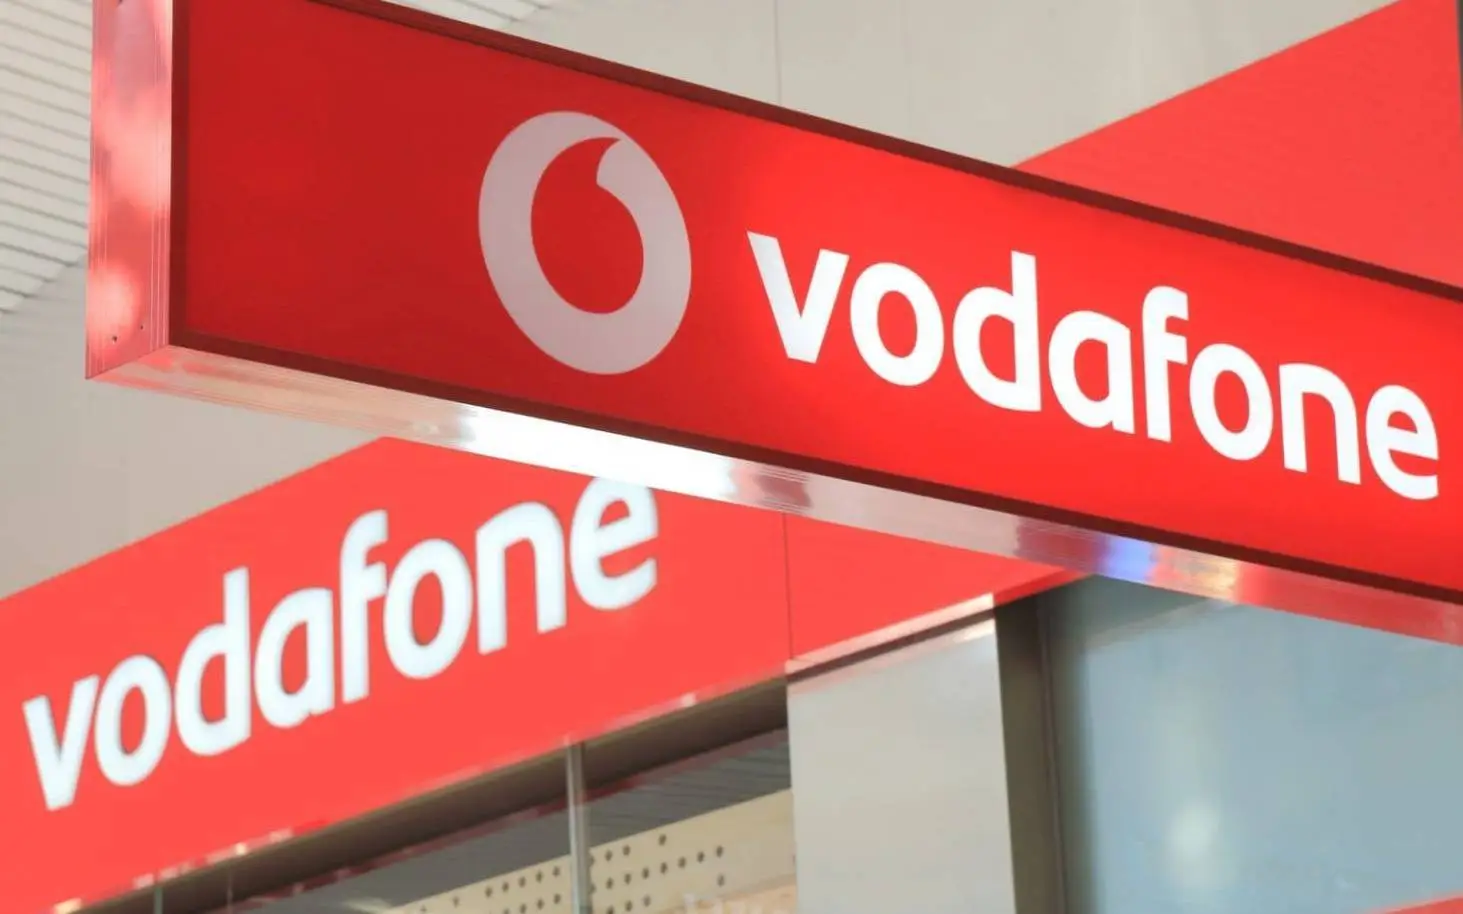 كود 3009# دقايق Vodafone وباقة ميجات إنترنت مجانية ببلاش